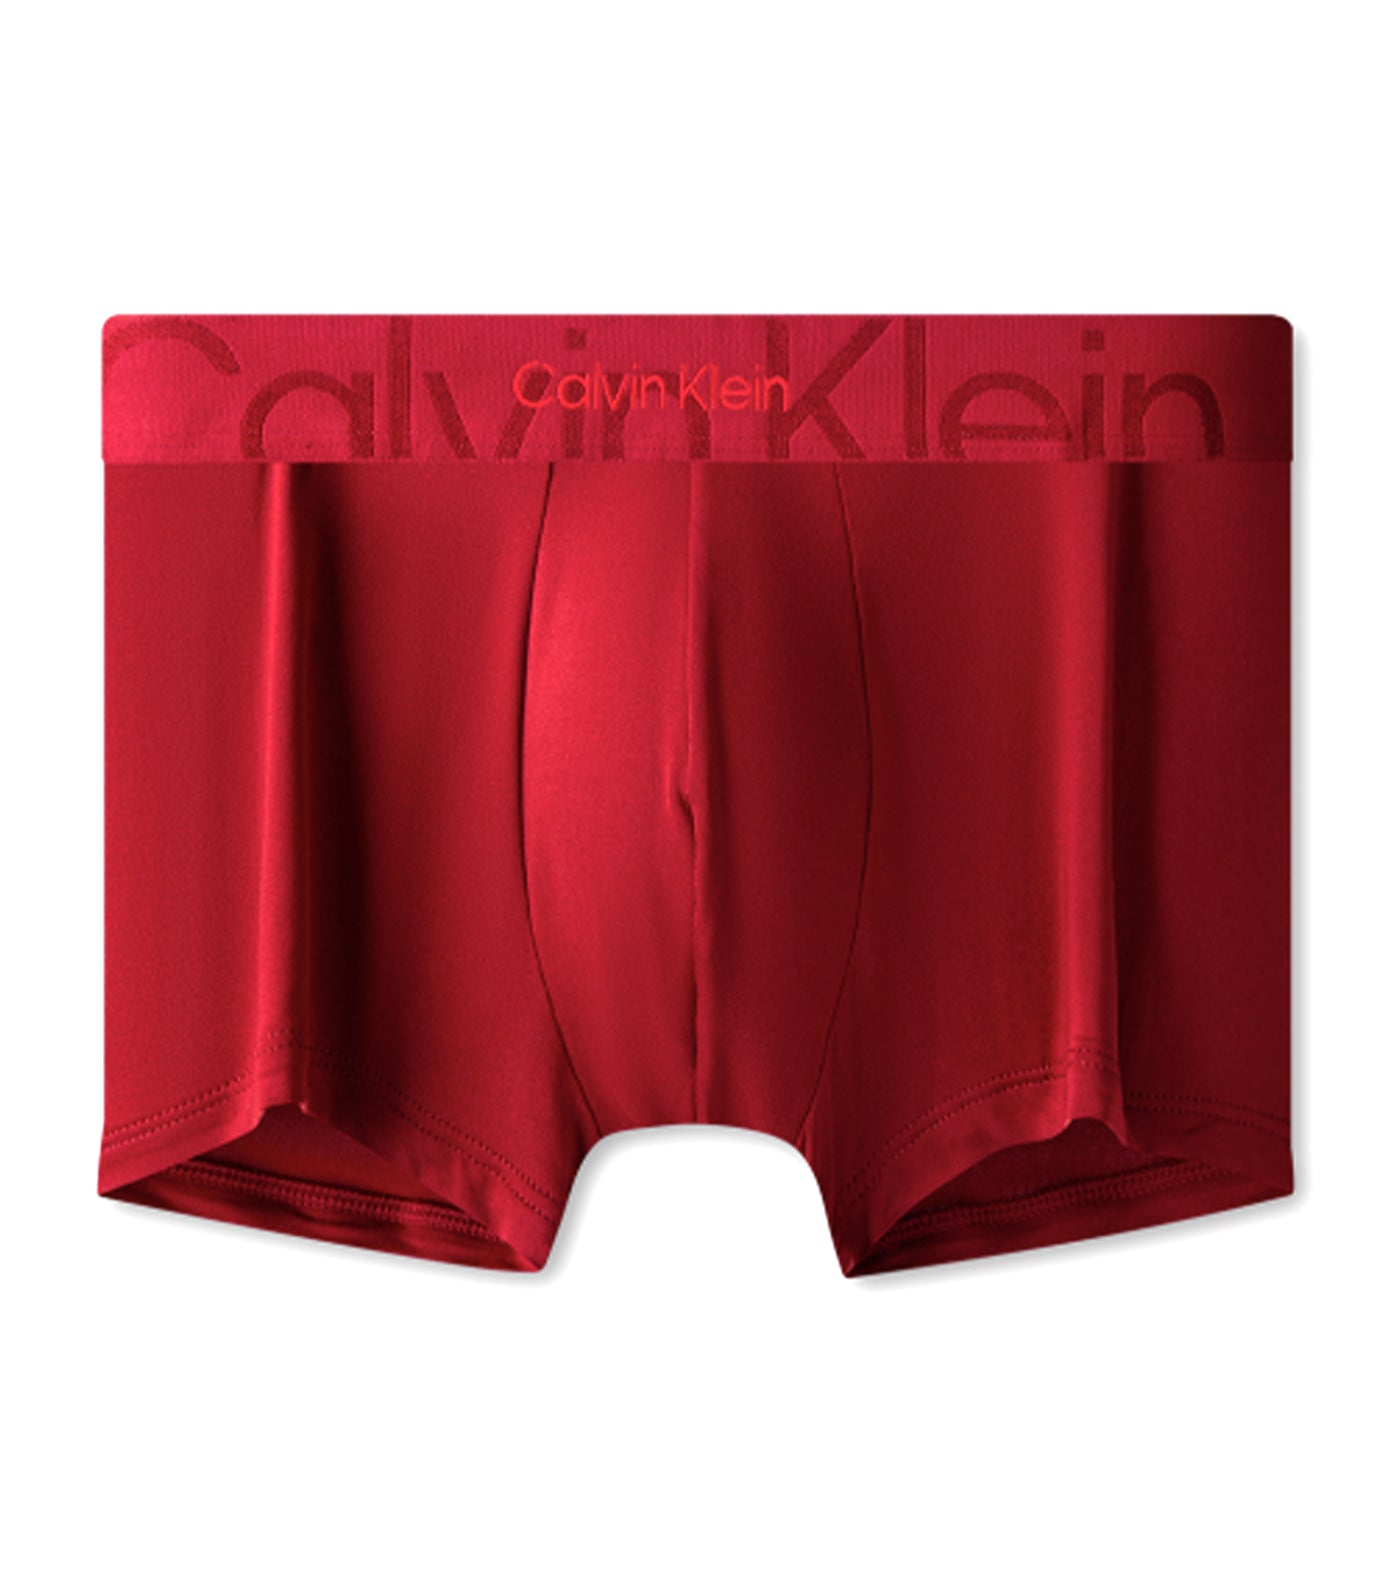 i-Cons: Calvin Klein 